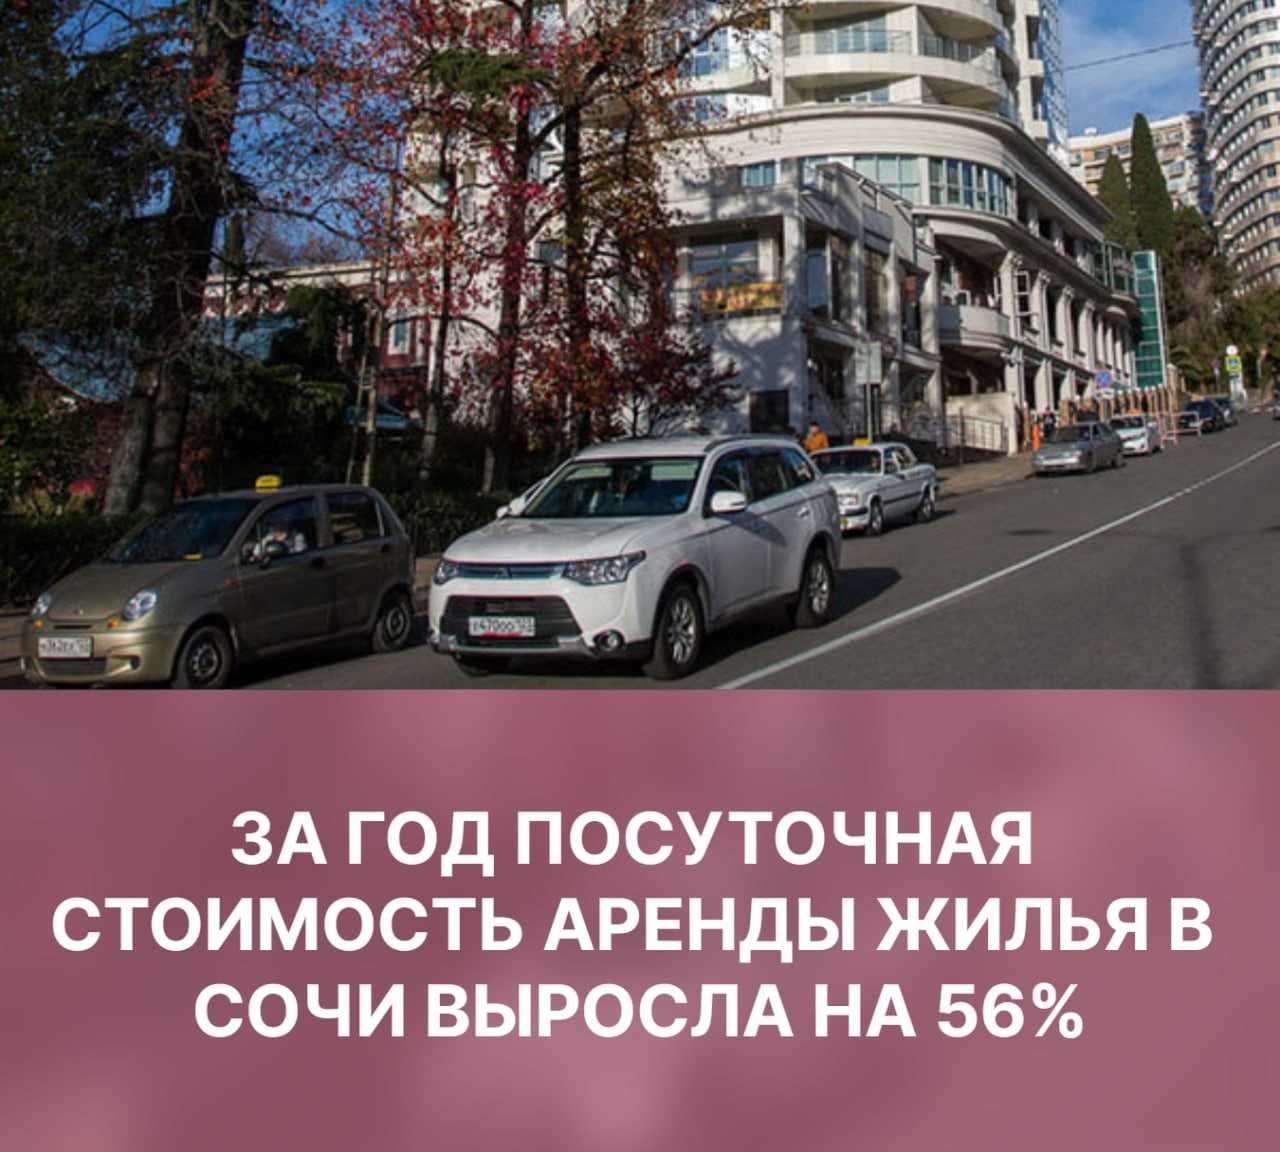 За год посуточная стоимость аренды жилья в Сочи выросла на 56%. В среднем по…